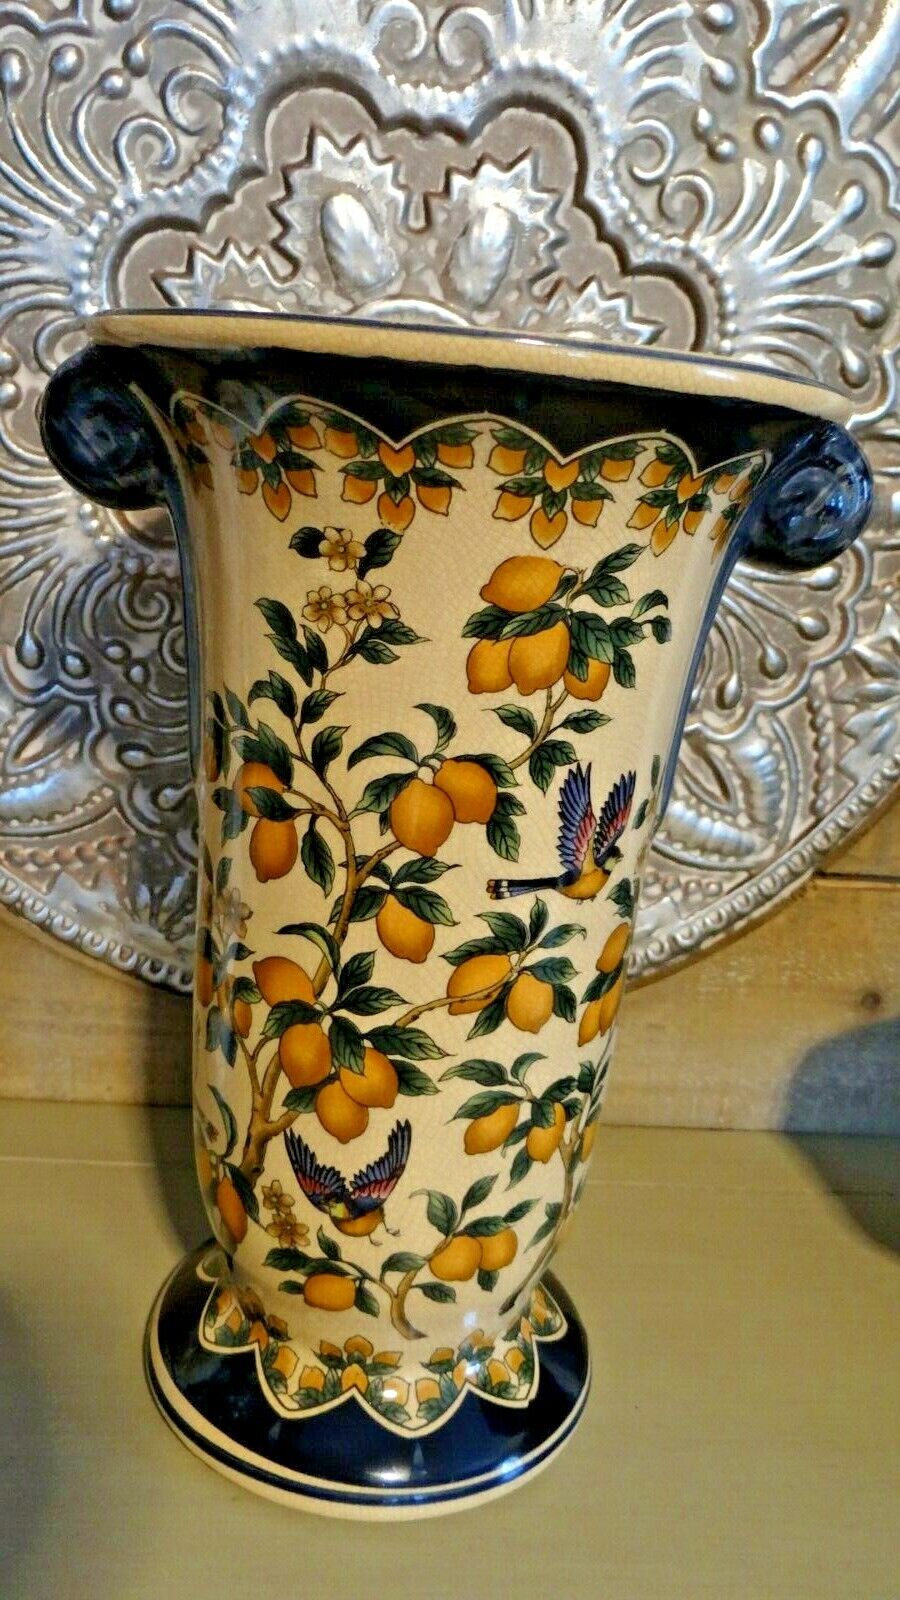 Large Crackle Finish Vase With Lemon And Bird Pattern